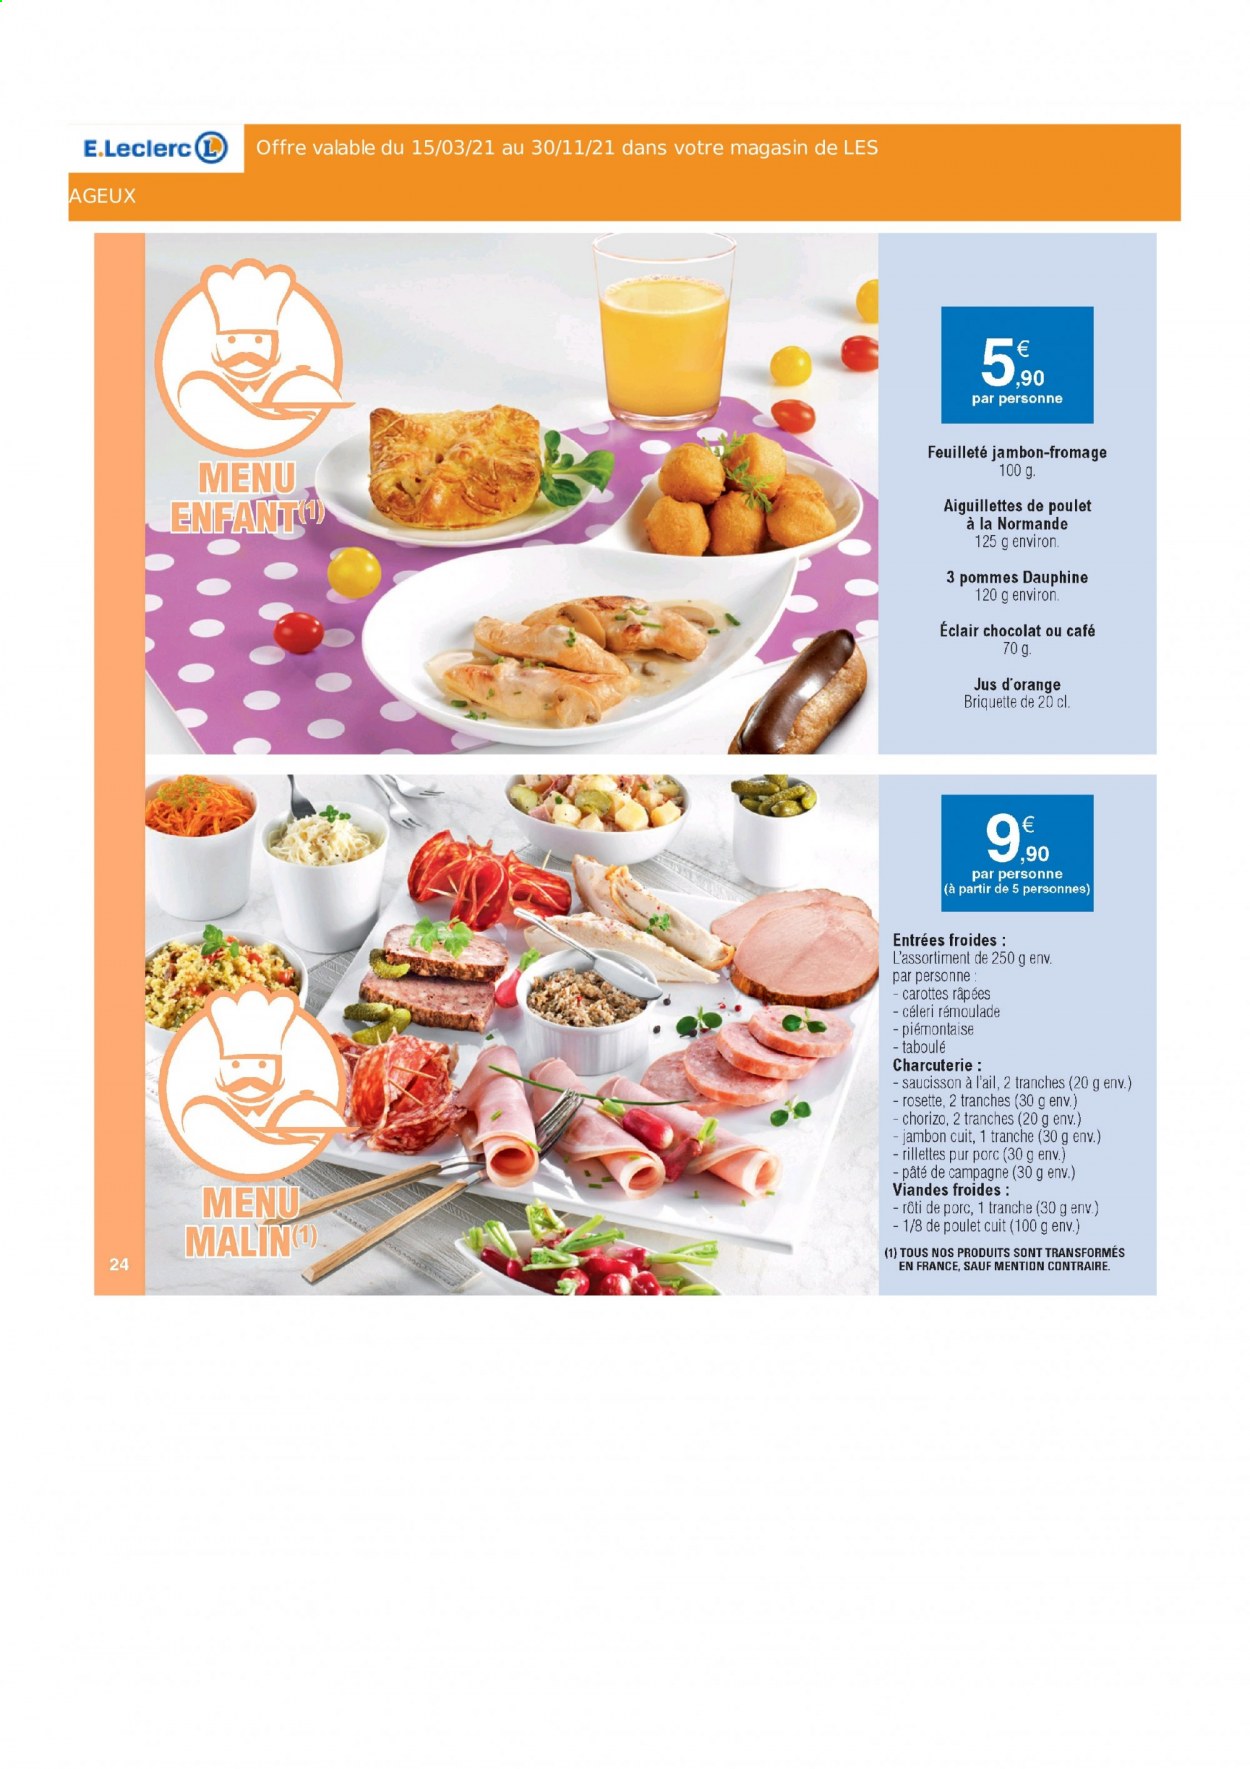 thumbnail - Catalogue E.Leclerc - Produits soldés - rôti de porc, viande de porc, carotte, éclair, viande de poulet, escalope de poulet, rillettes, chorizo, rosette, saucisson, jus, jus d'orange. Page 24.